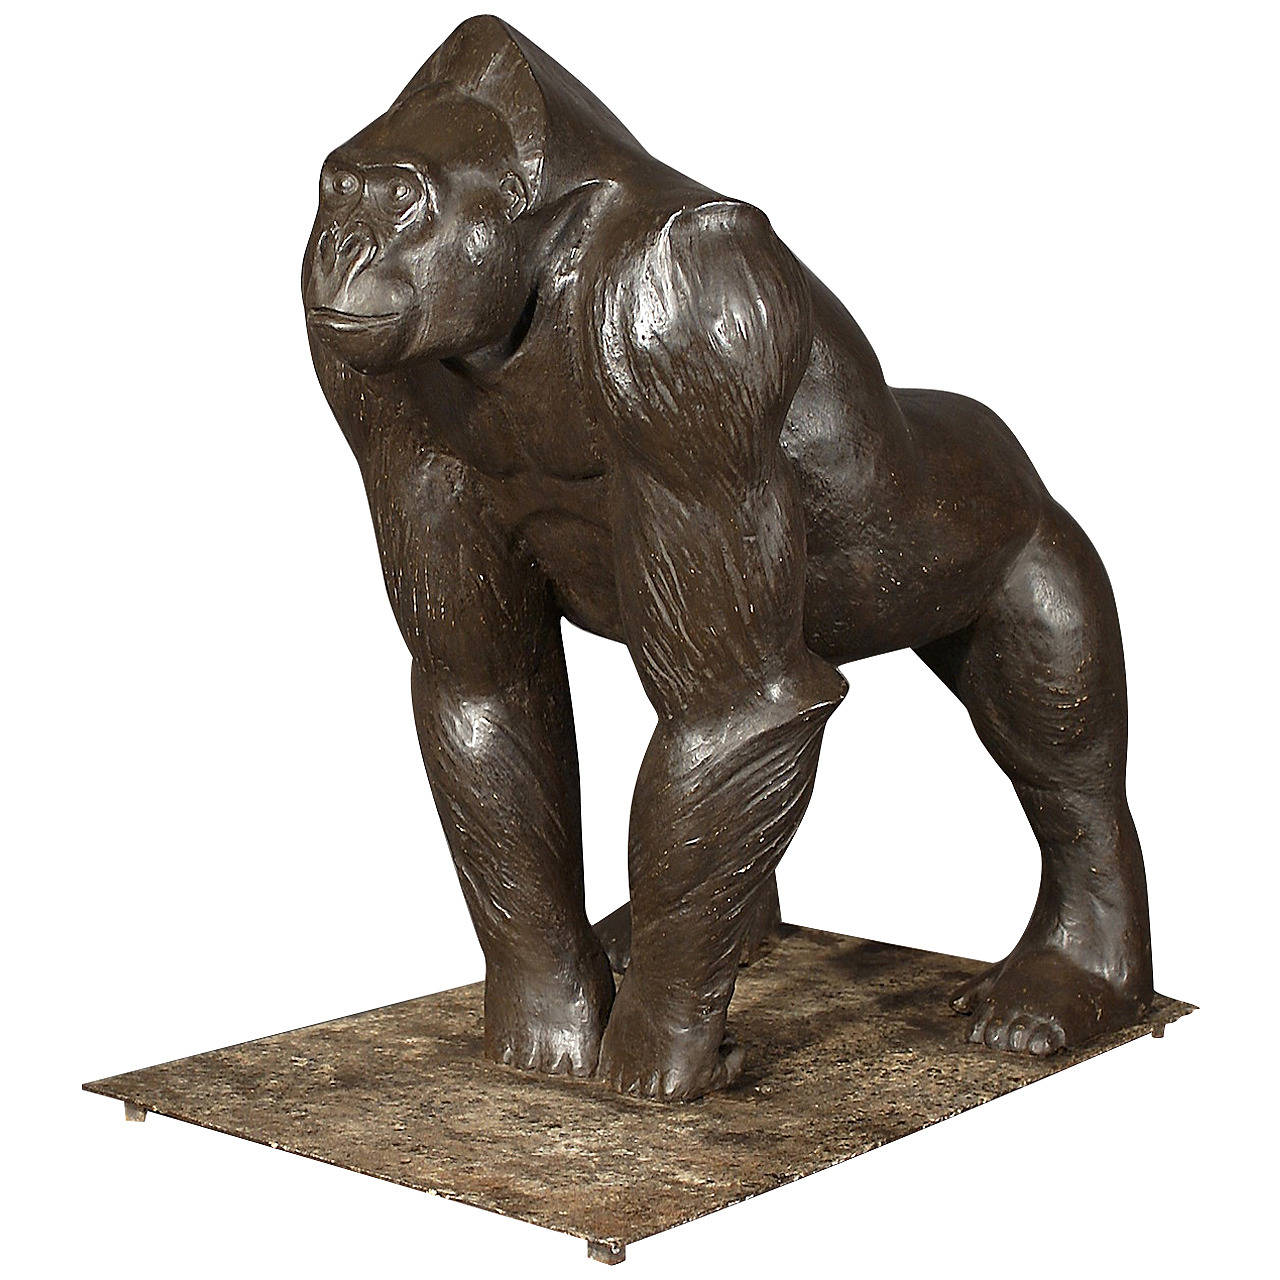 Sculpture Representing a Gorilla For Sale